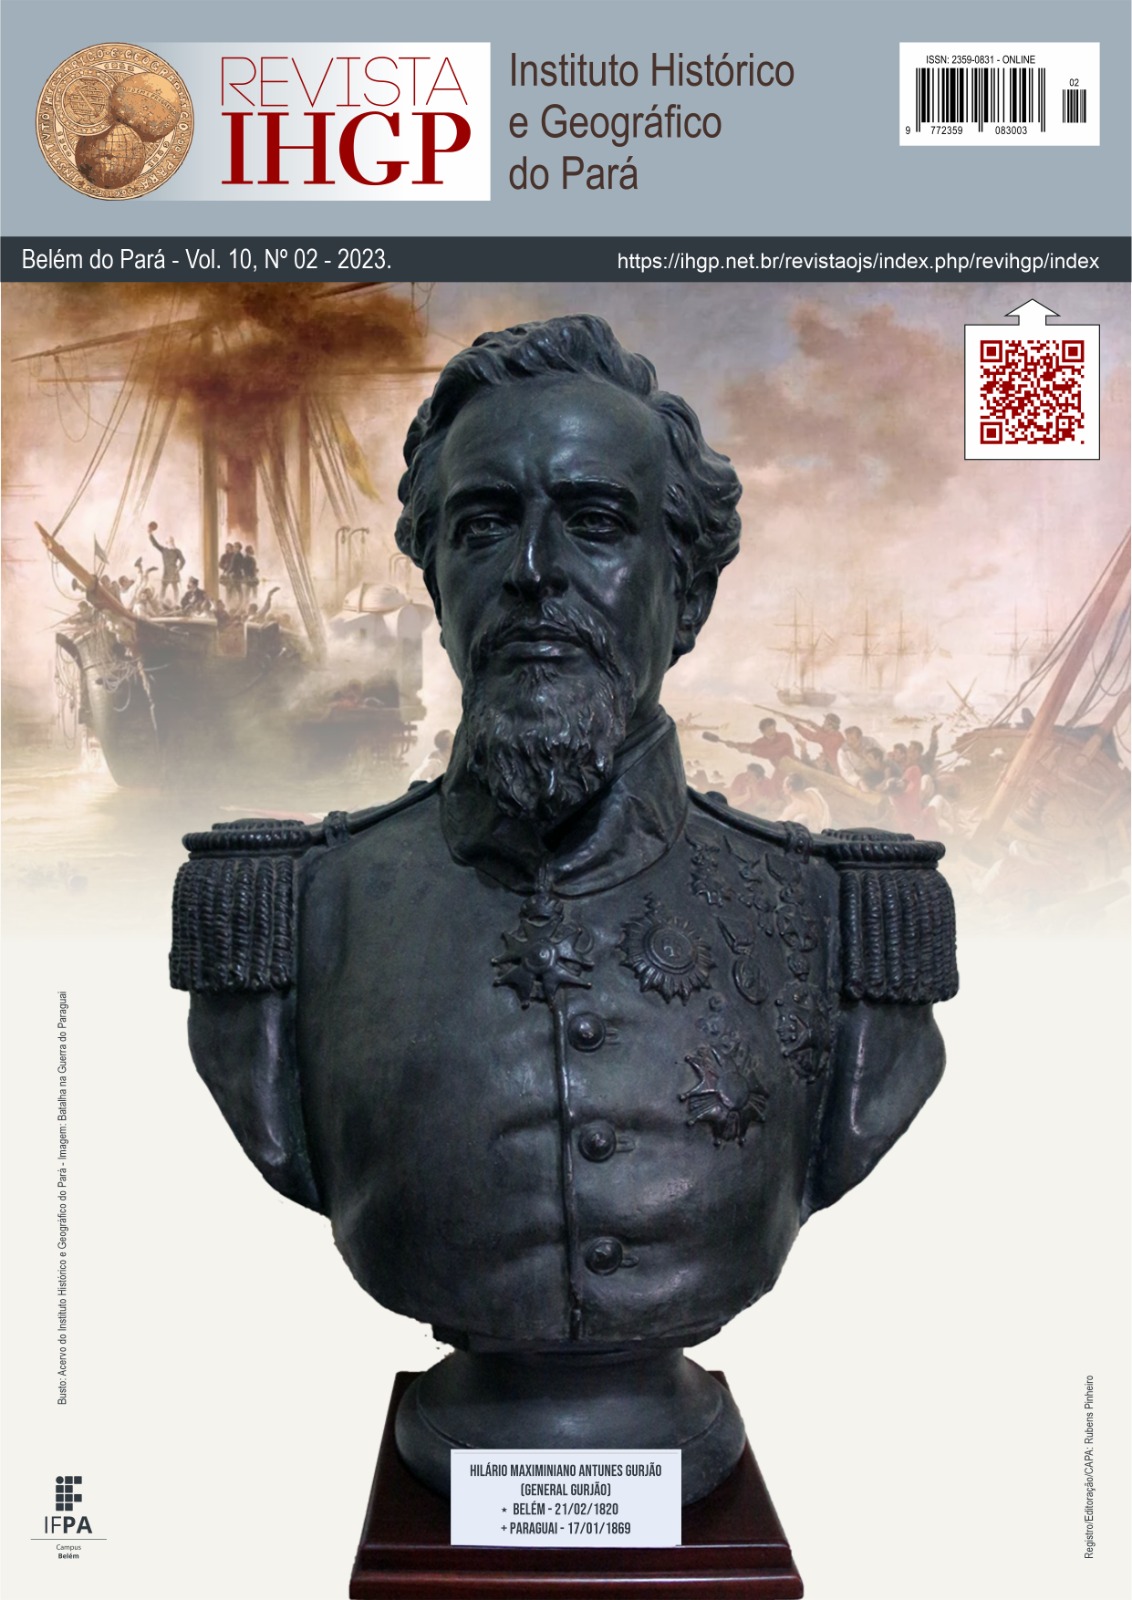 CAPA: busto de Hilário Maximiniano Antunes Gurjão (General Gurjão)